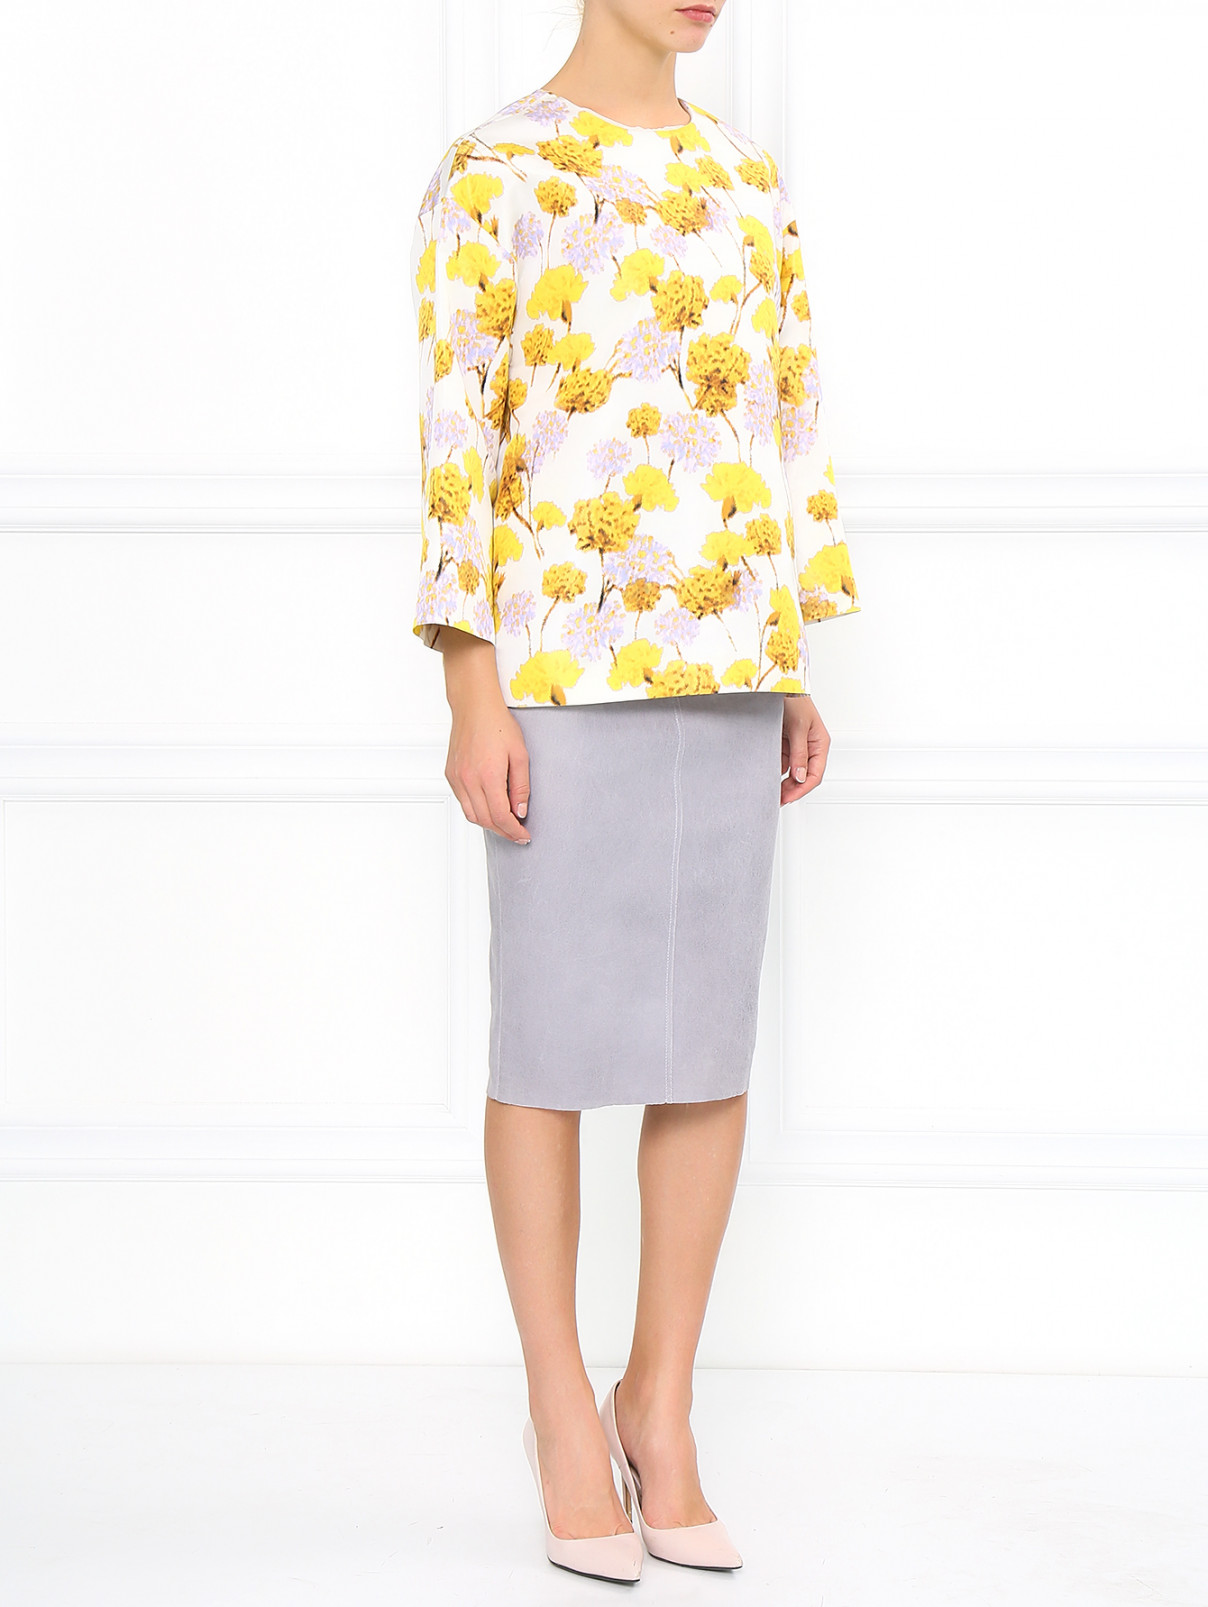 Шелковая блуза с абстрактным принтом Giambattista Valli  –  Модель Общий вид  – Цвет:  Белый